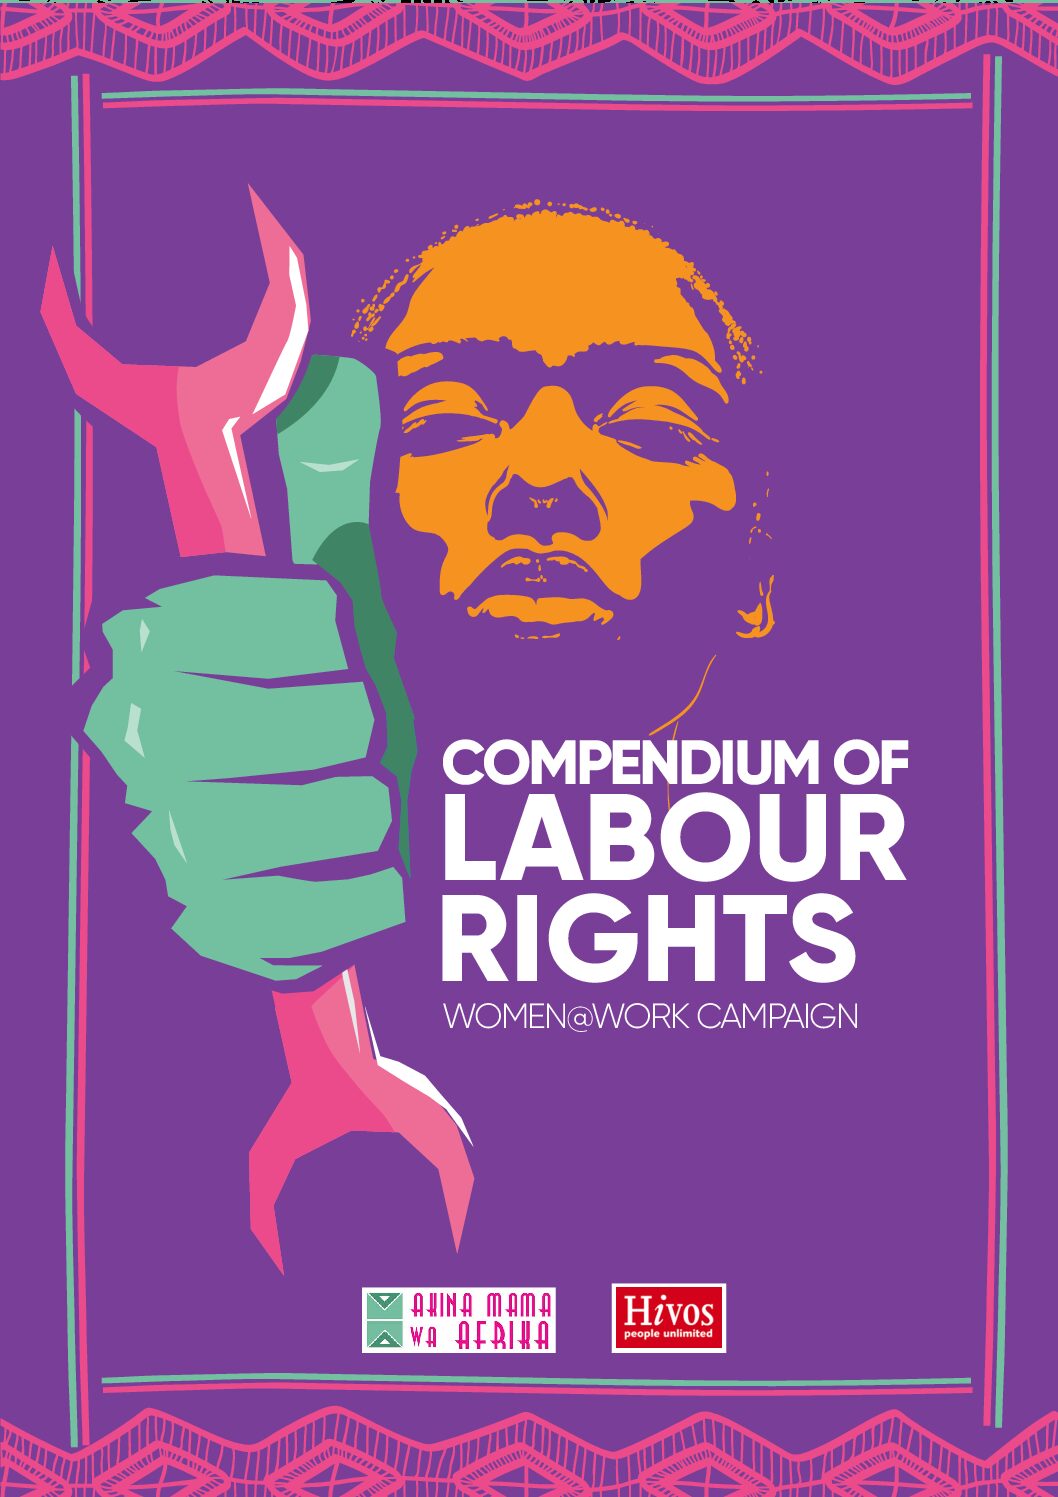 Compendium of labor rights